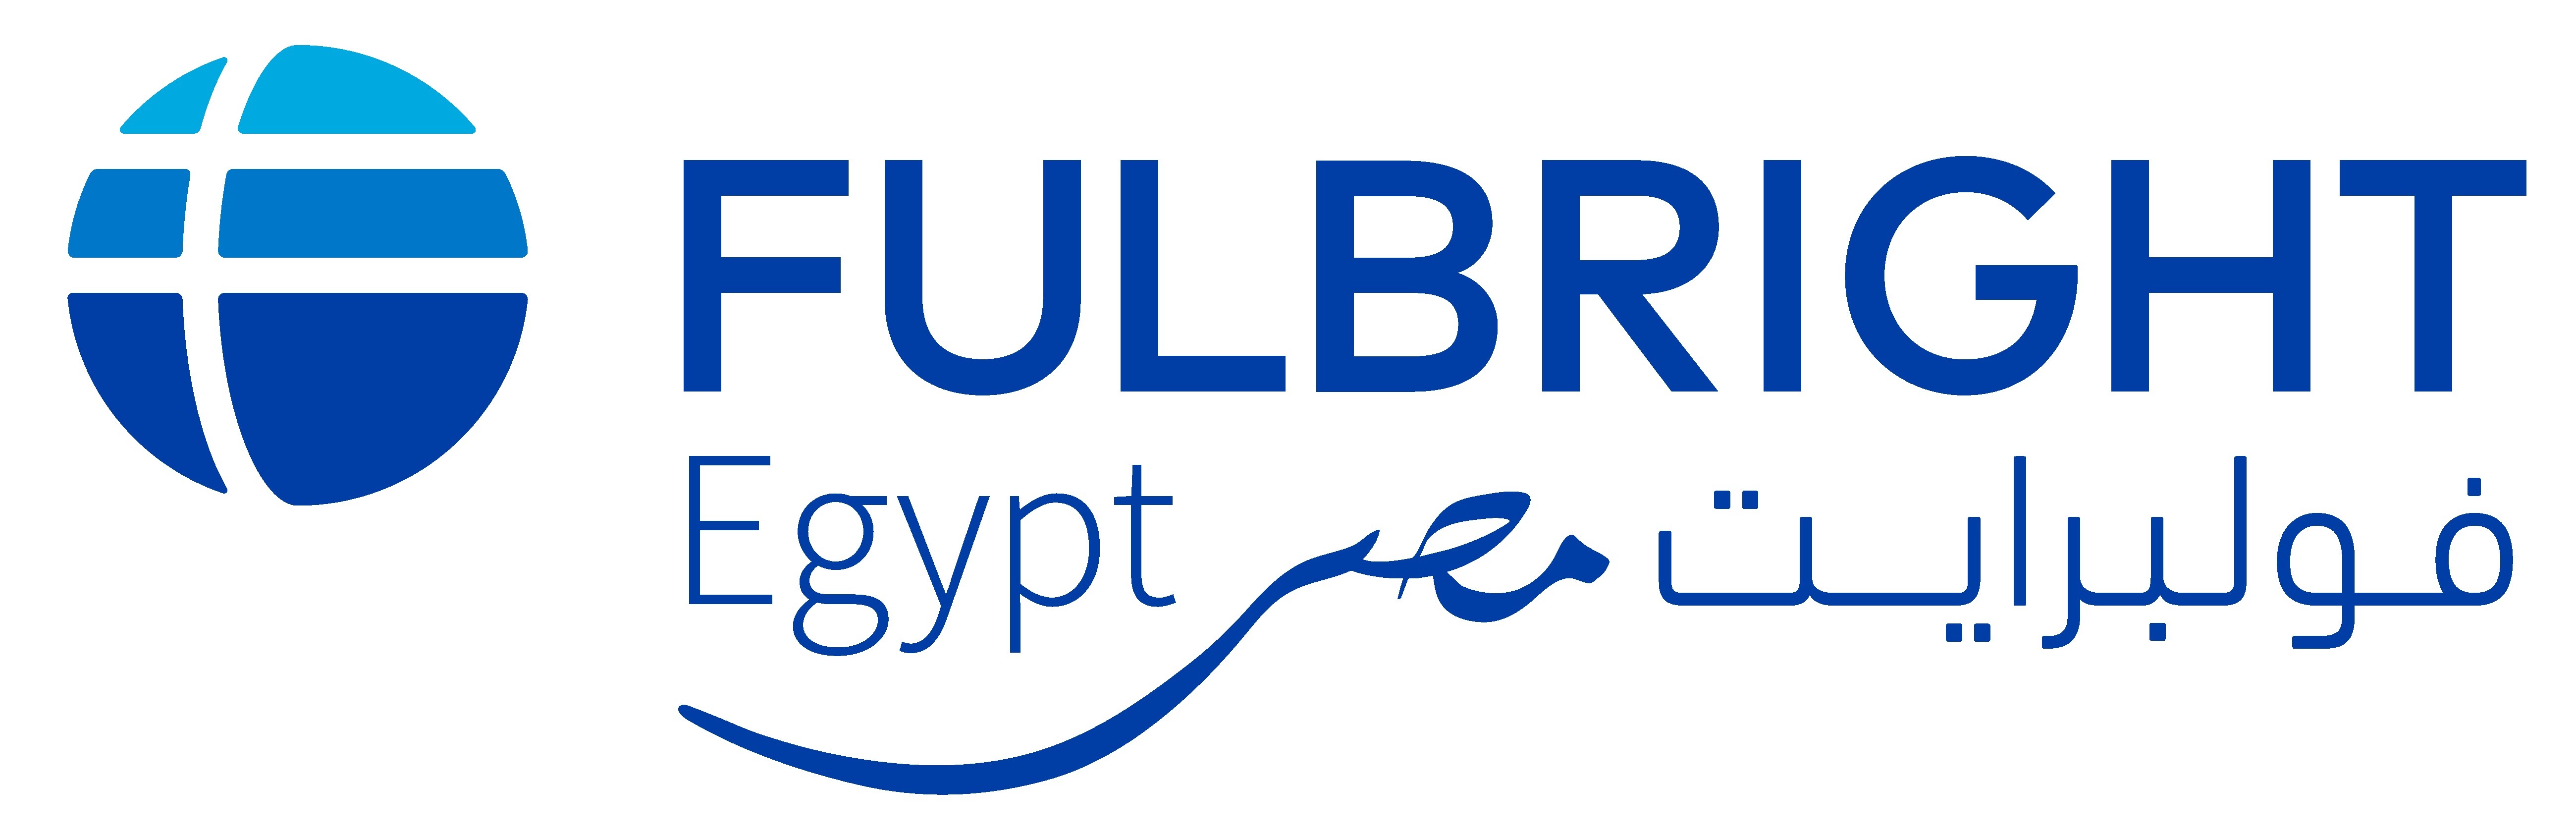 هيئة الفولبرايت تقدم تسهيلات للطلاب والاستاذه المصرين الراغبين في التقديم لمنح الهيئة